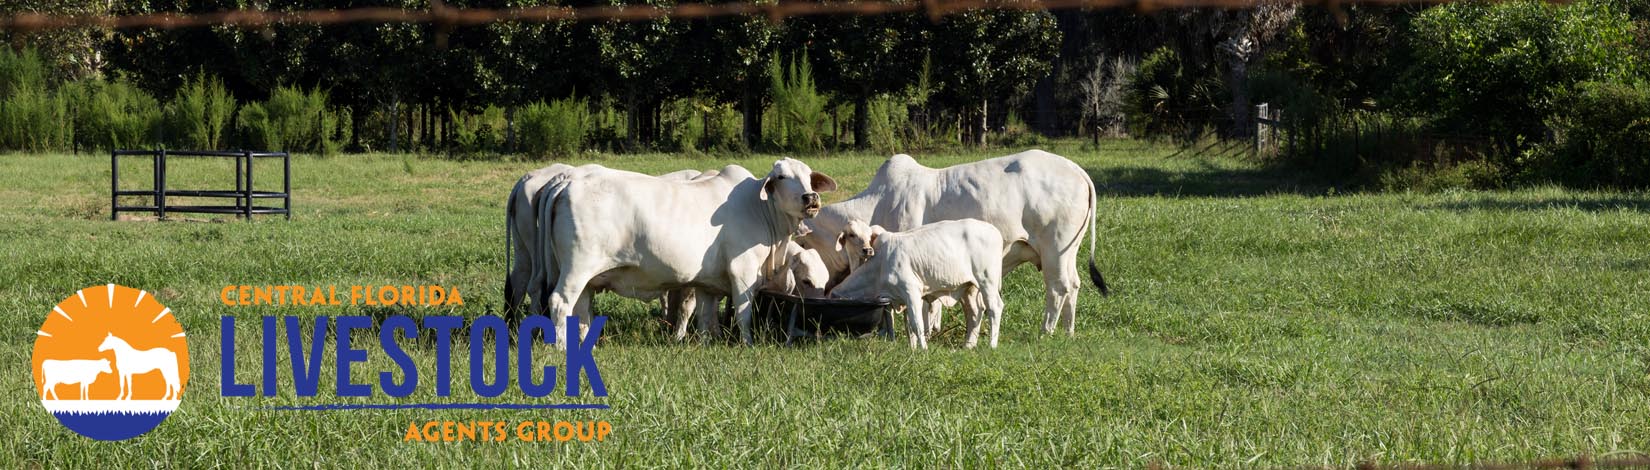 Cattle in Field Header 31